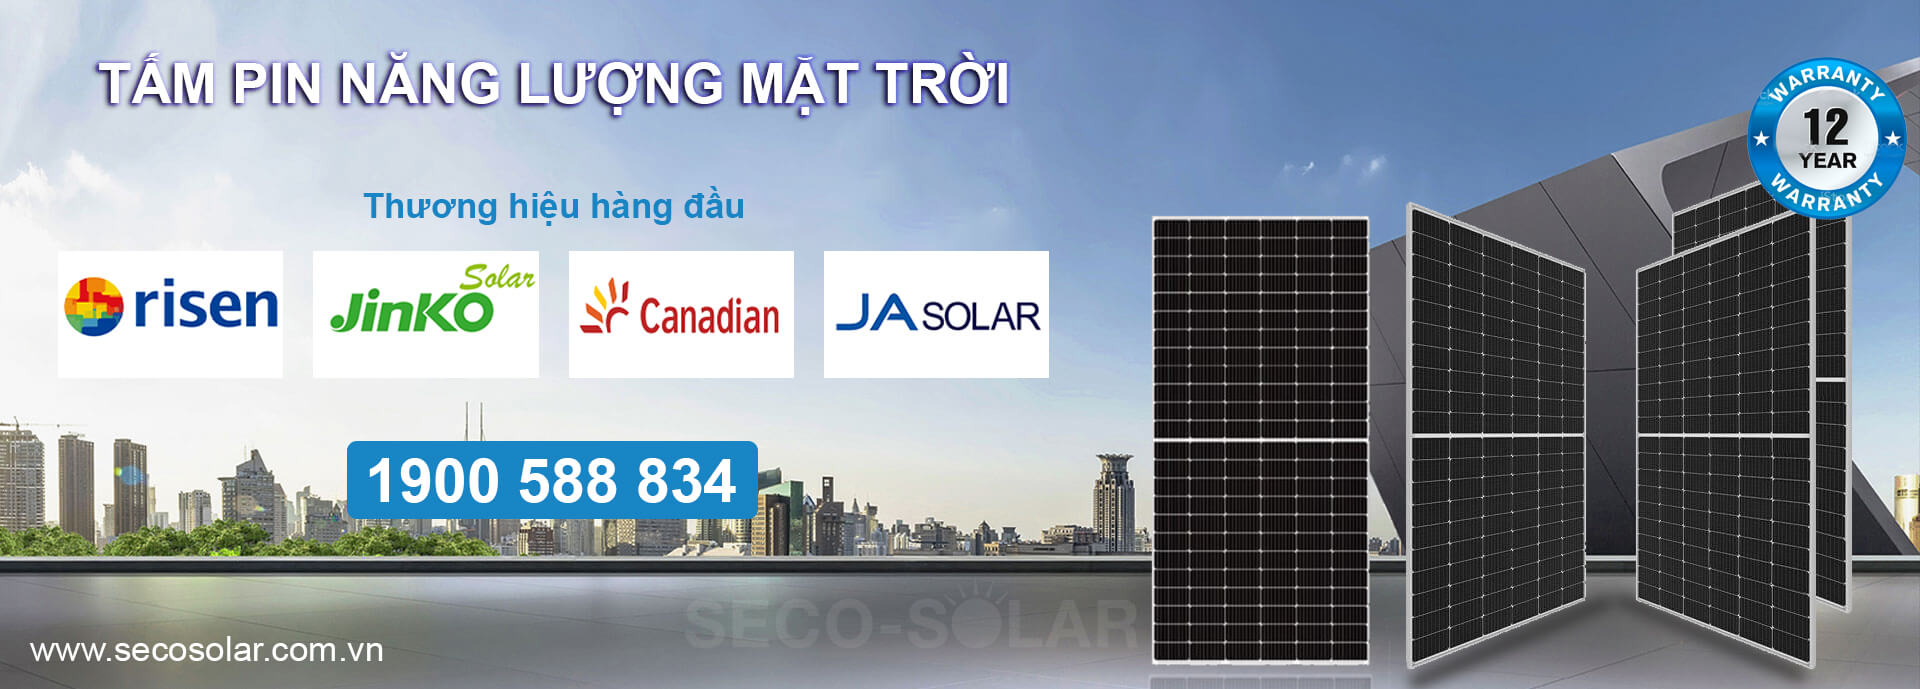 SECO-SOLAR cung cấp pin mặt trời Topray 340W chính hãng